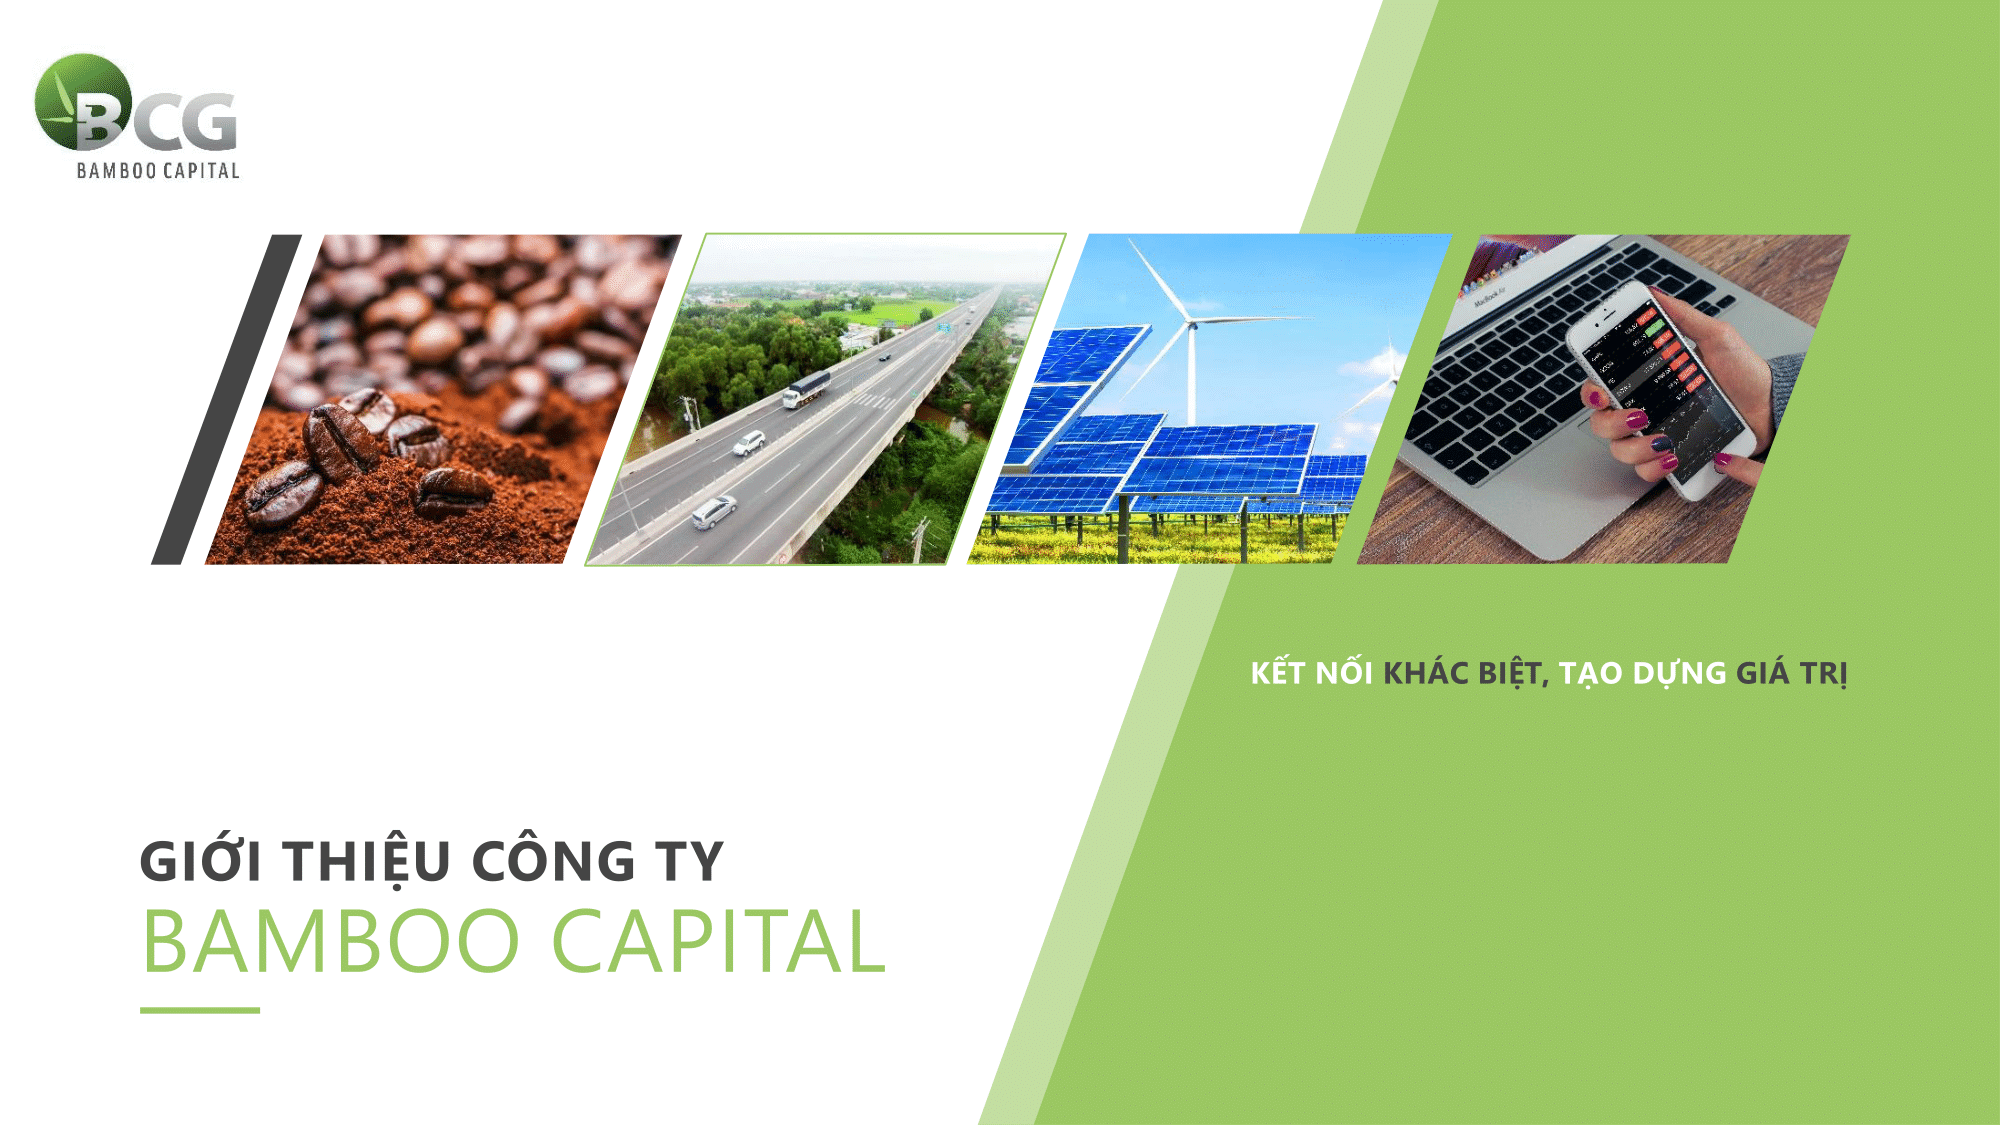 CTCP Bamboo Capital chuyển đổi trái phiếu thành cổ phiếu với giá trị lên đến 900 tỷ đồng